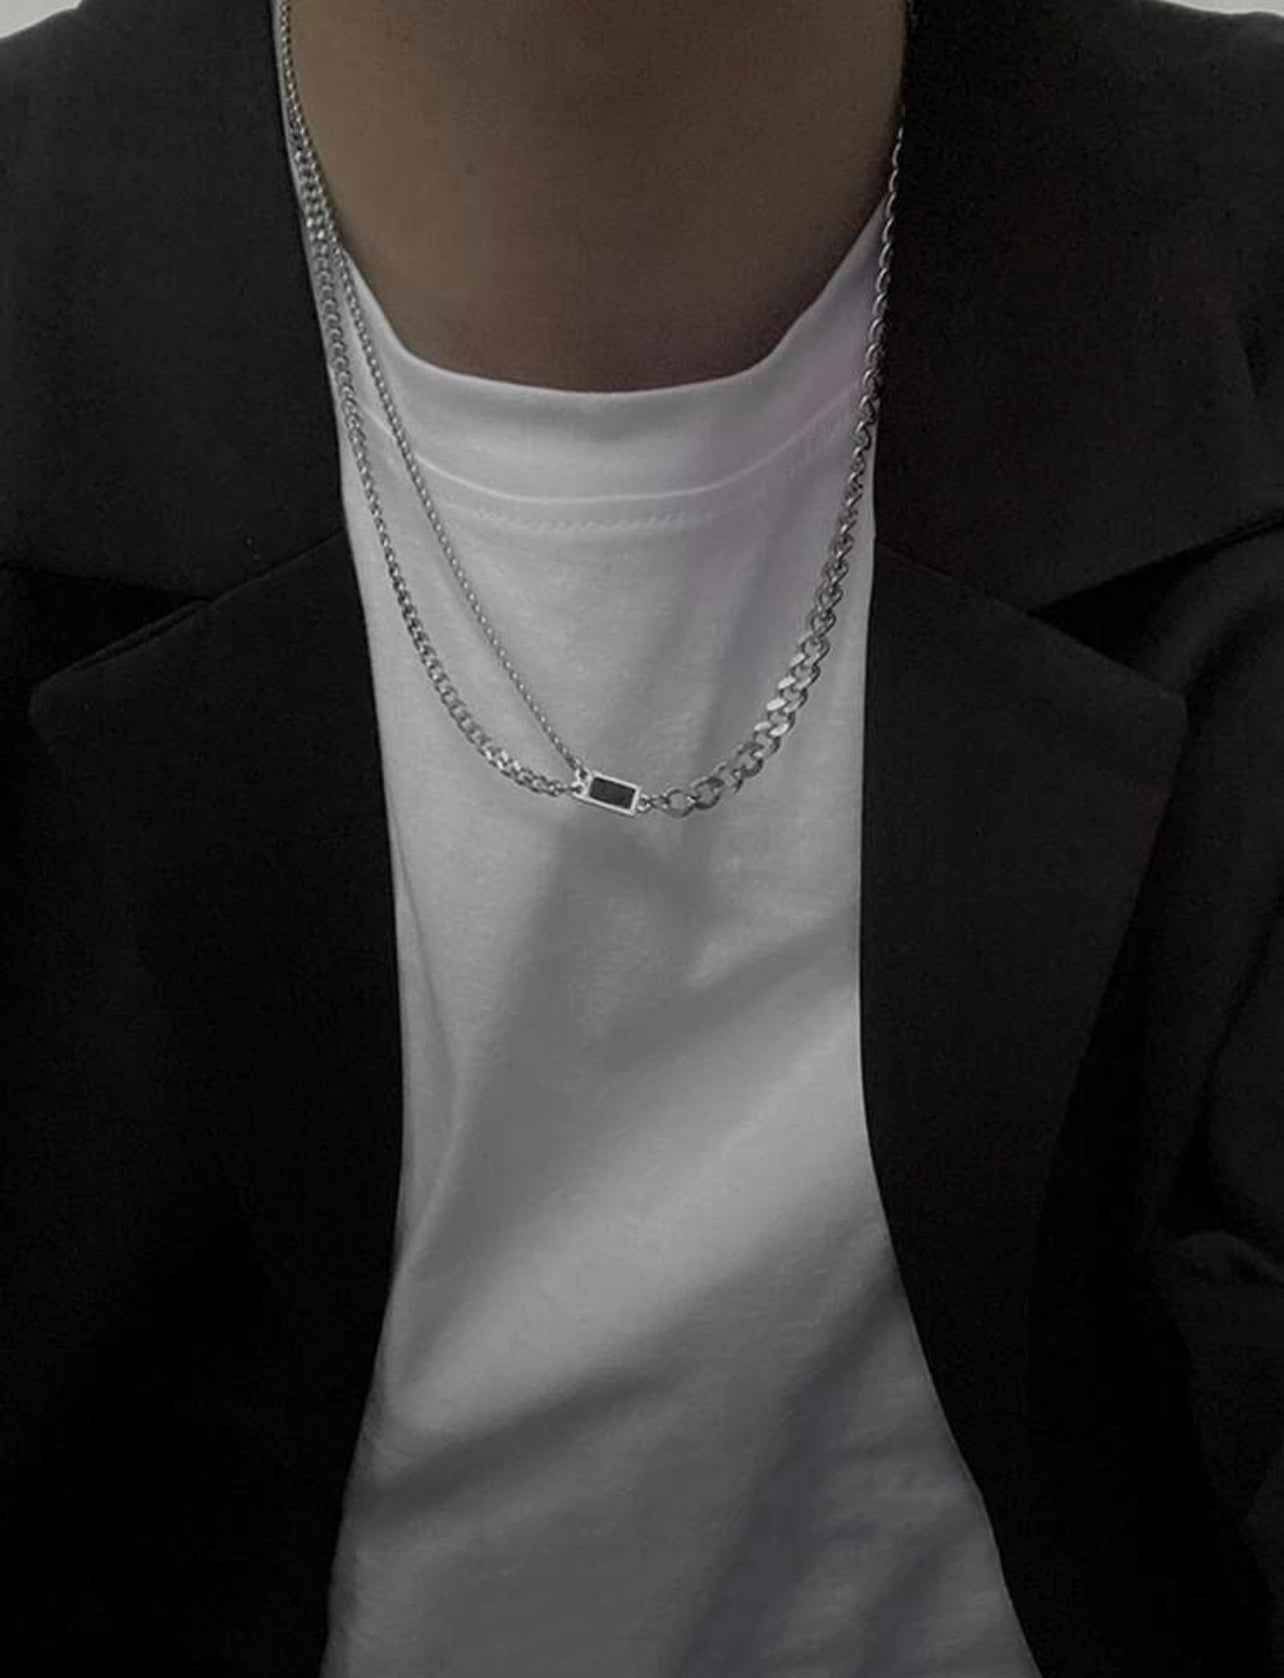 Men’s simple chain necklace